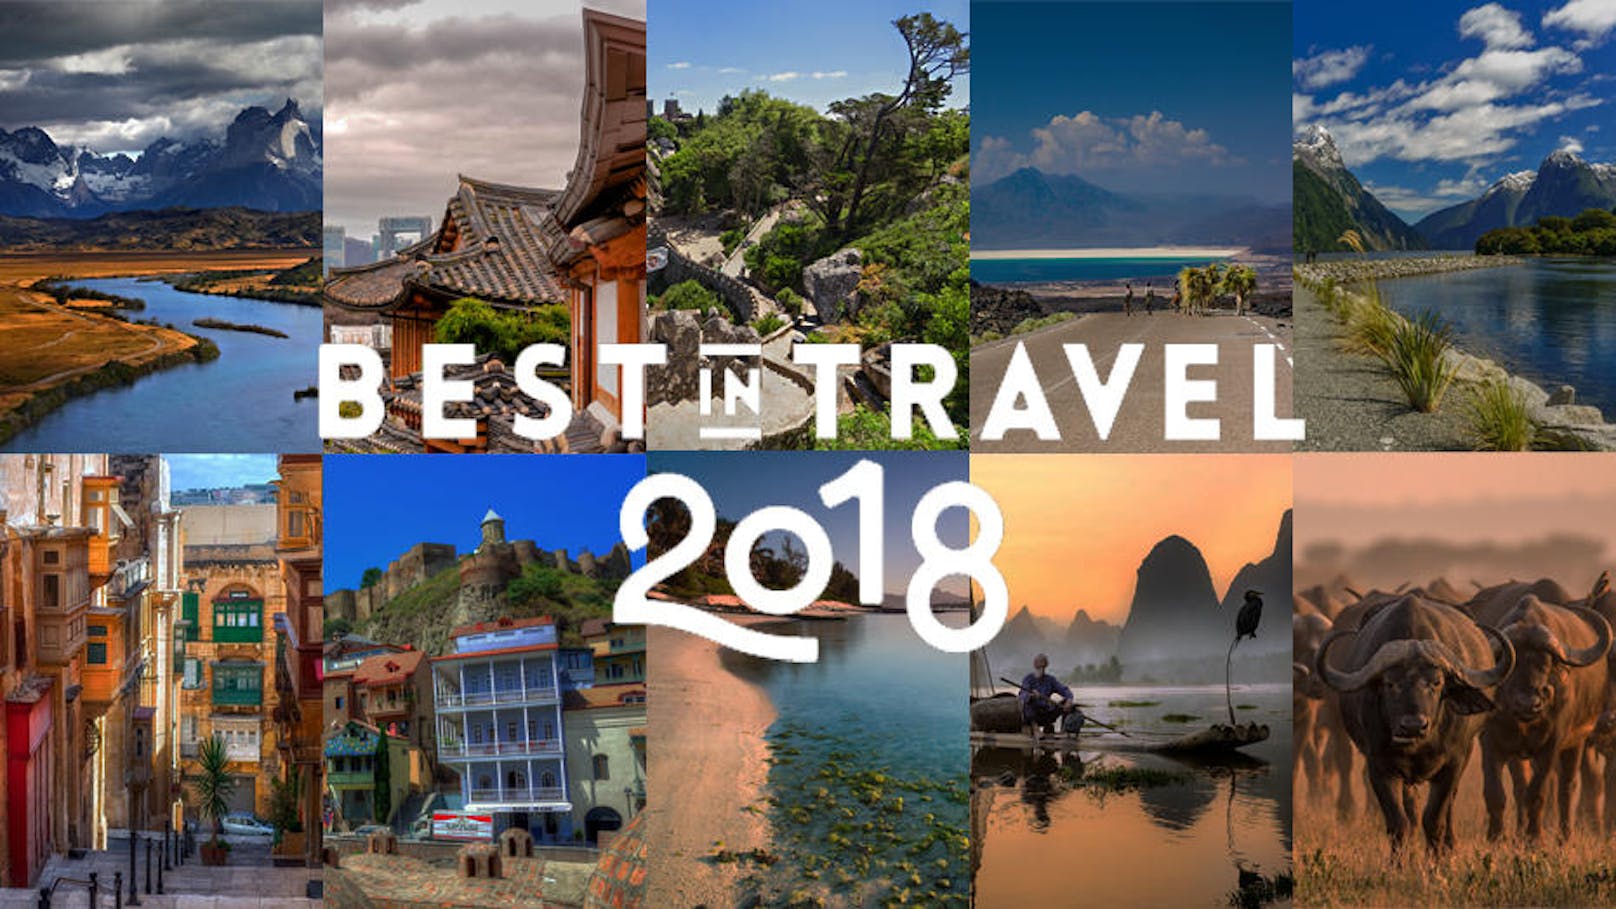 Klicken Sie sich durch die Top-Ten Reiseziele 2018 >>>